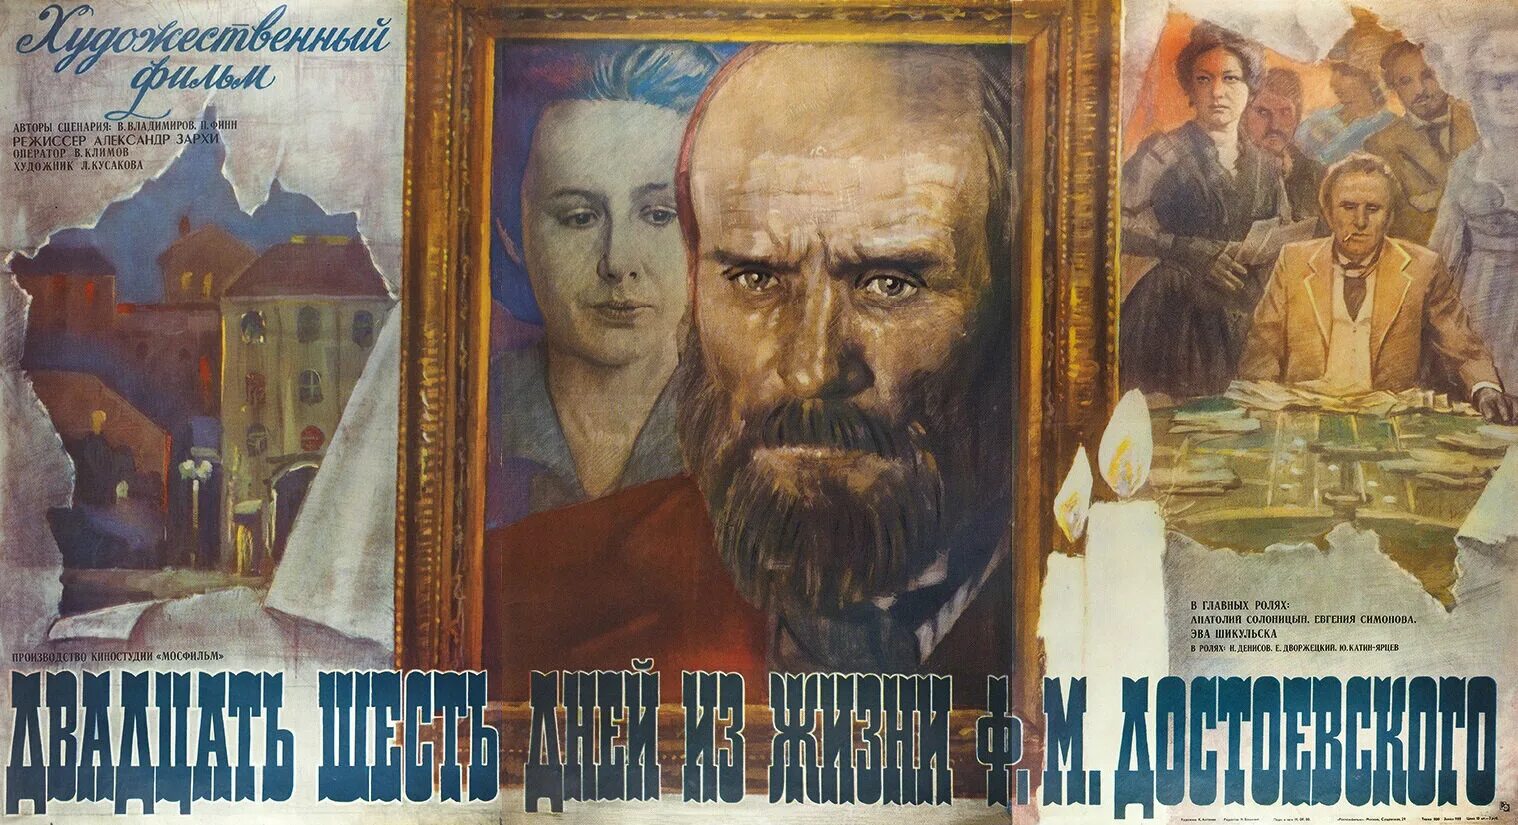 Около двадцати первых лет моей жизни. Двадцать шесть дней из жизни Достоевского 1980 Постер. Солоницын Достоевский.